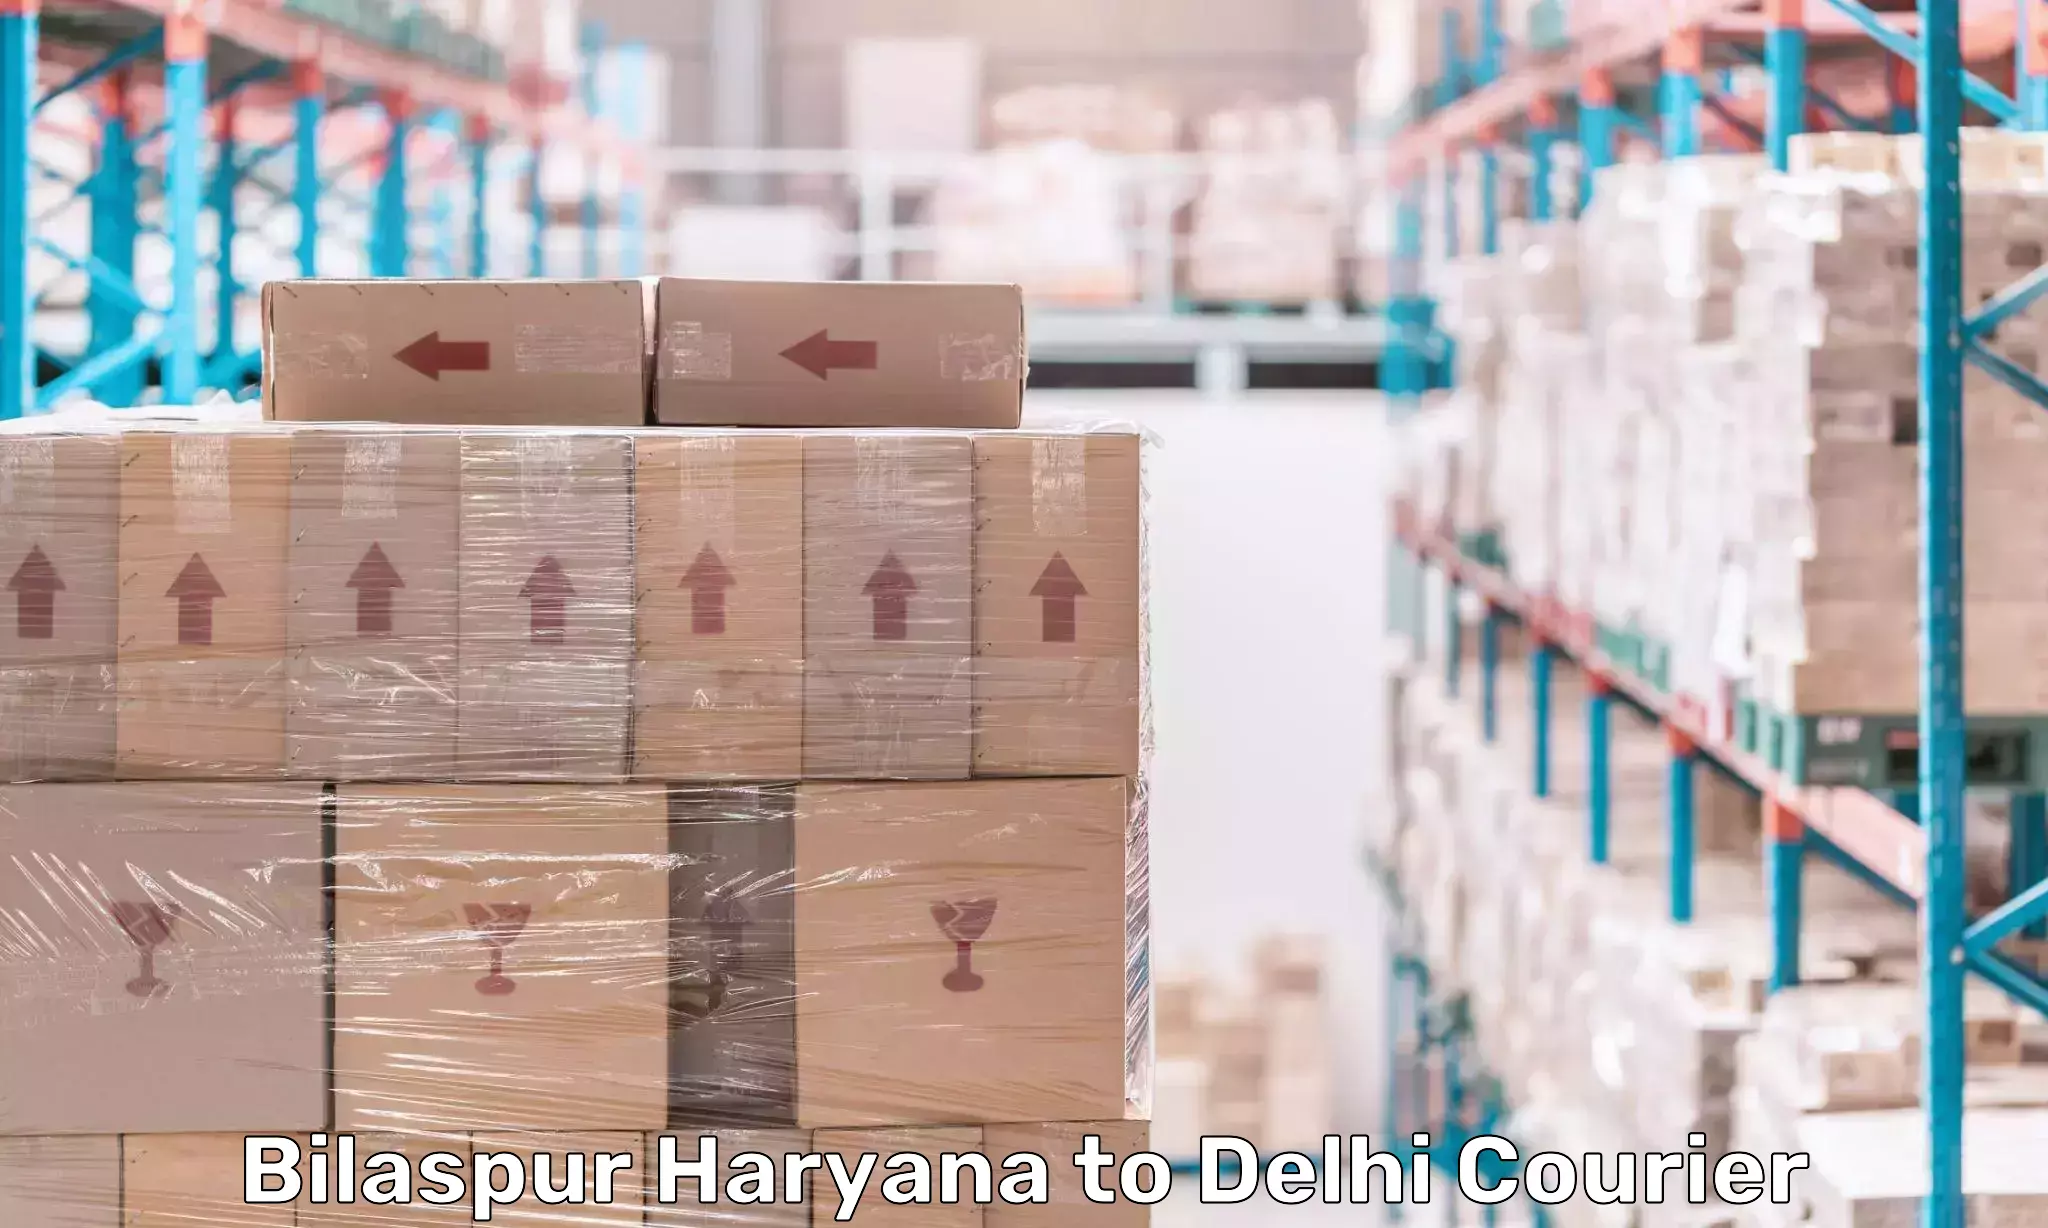 Courier app Bilaspur Haryana to Kalkaji